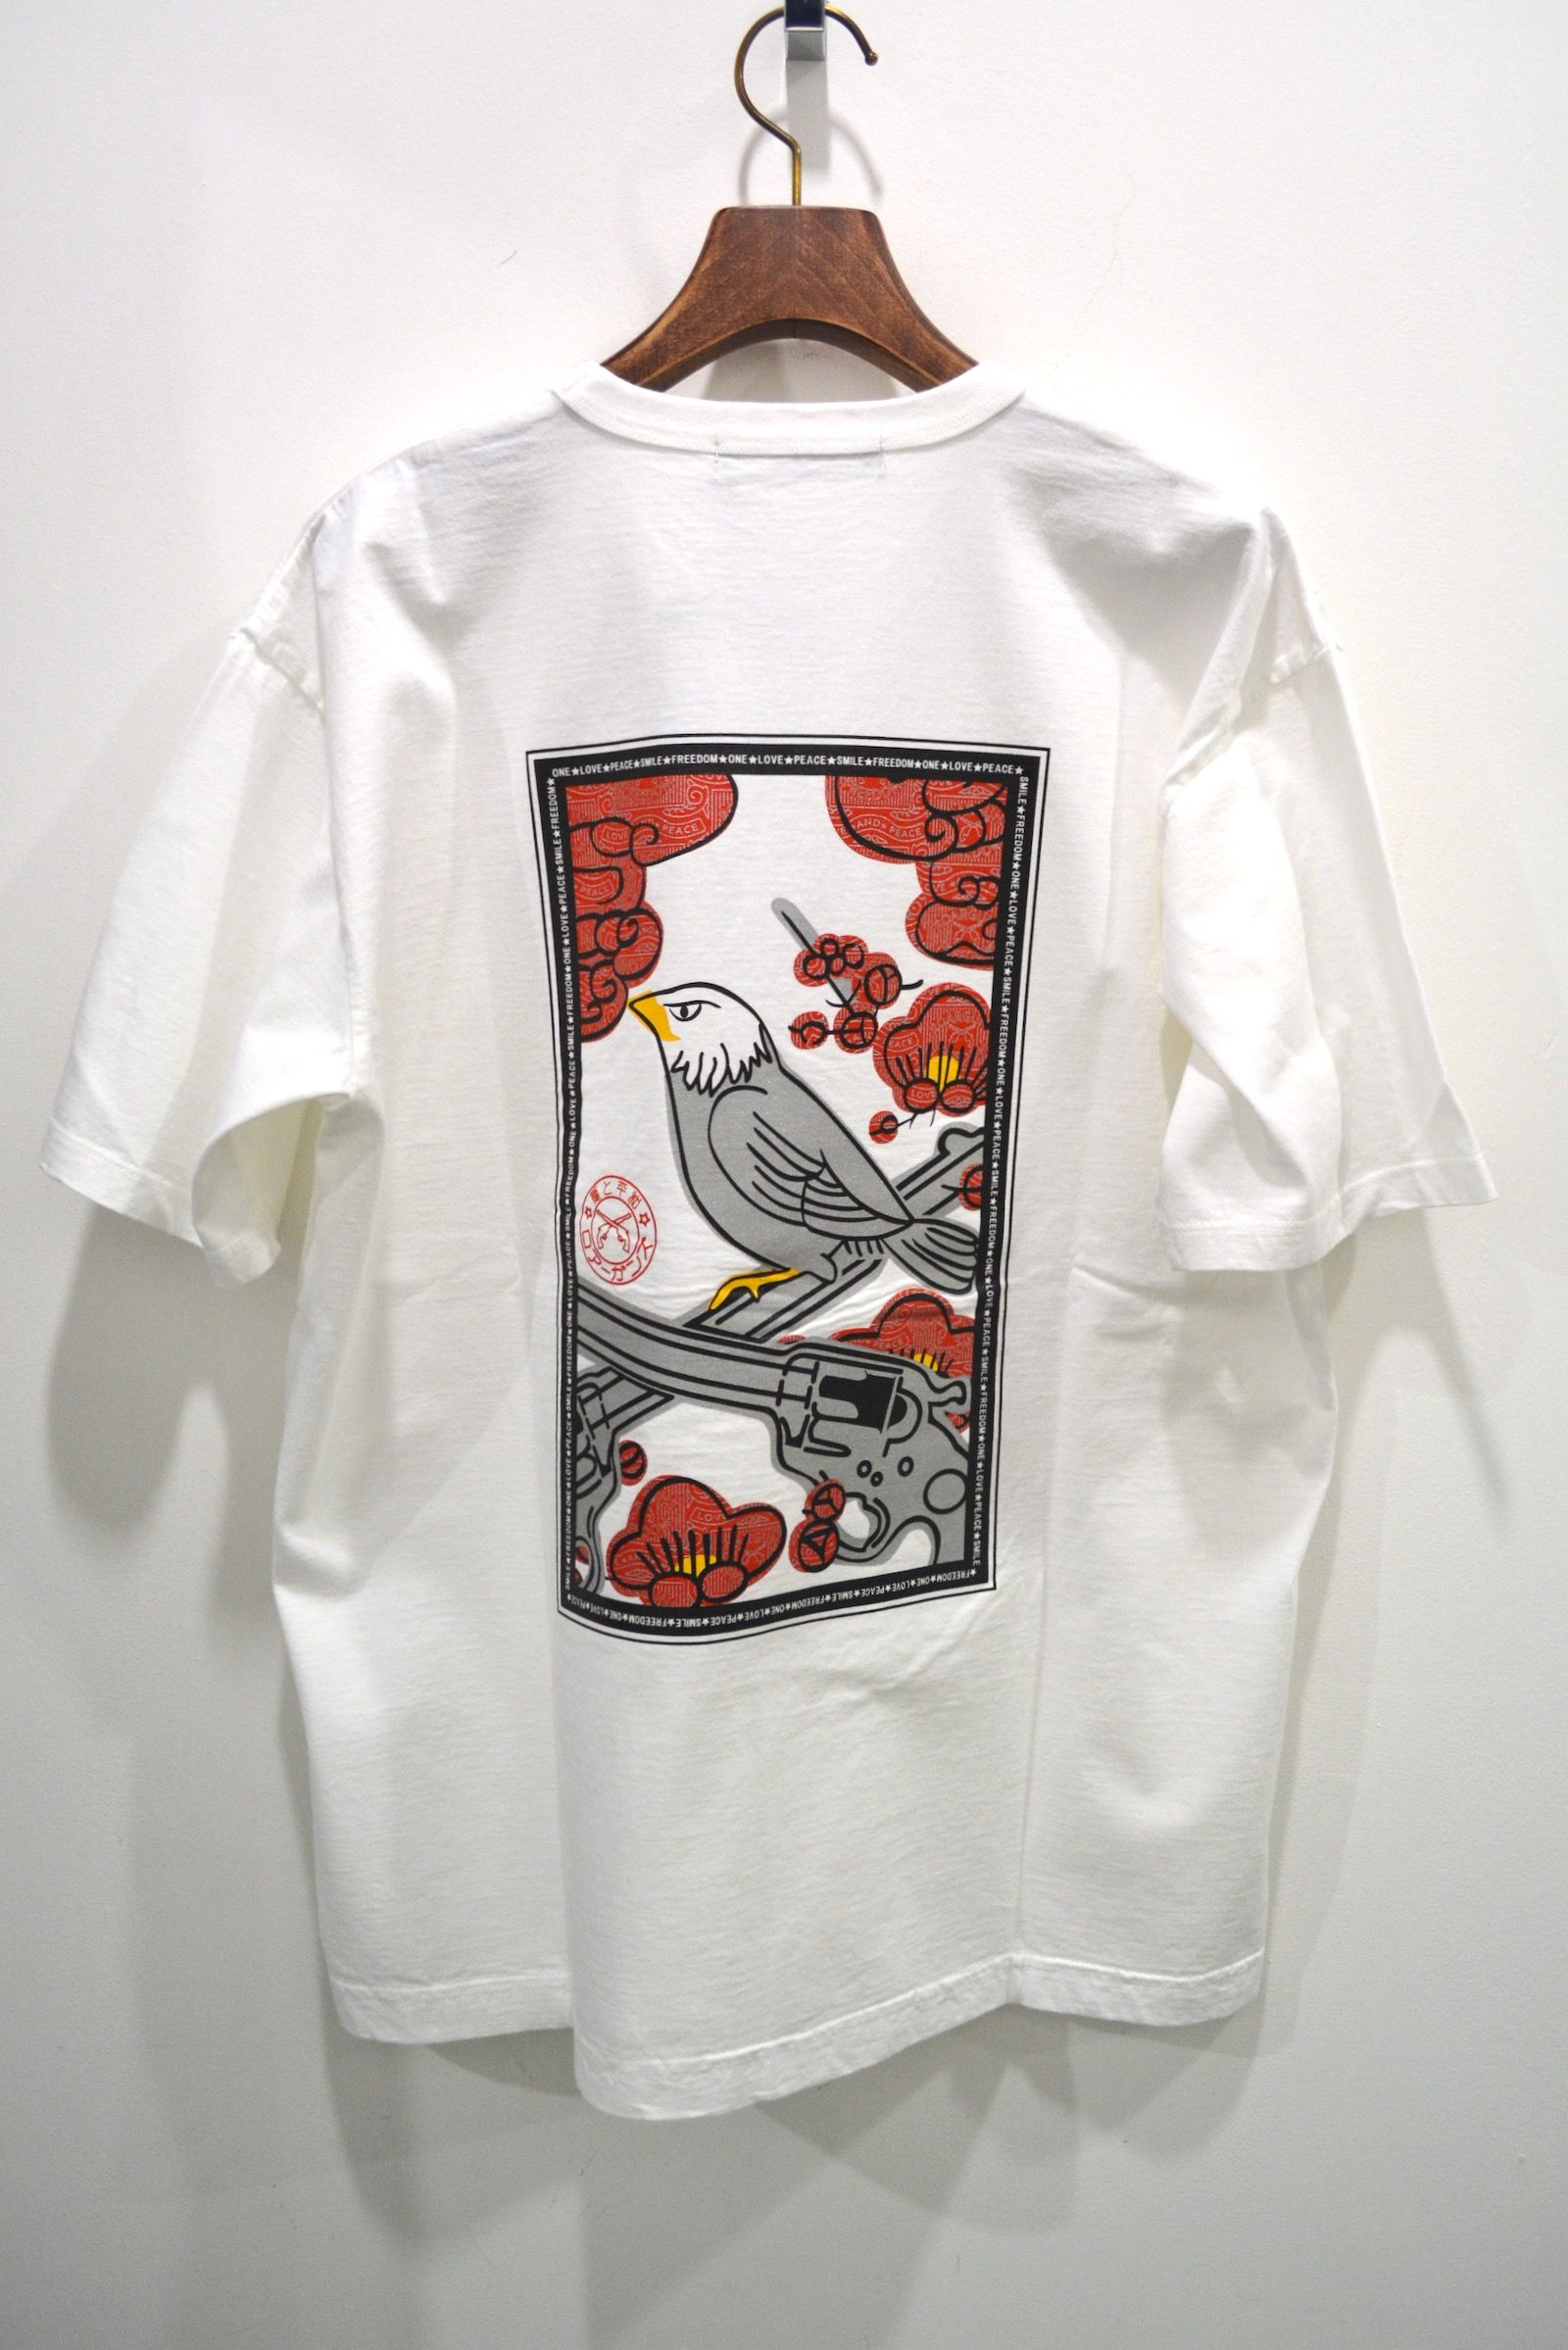 【2021'春夏新作】AMR/CTN S/S HANAFUDA / アメリカンコットン・花札バックプリントTシャツ (WHITE) - 1 (S)